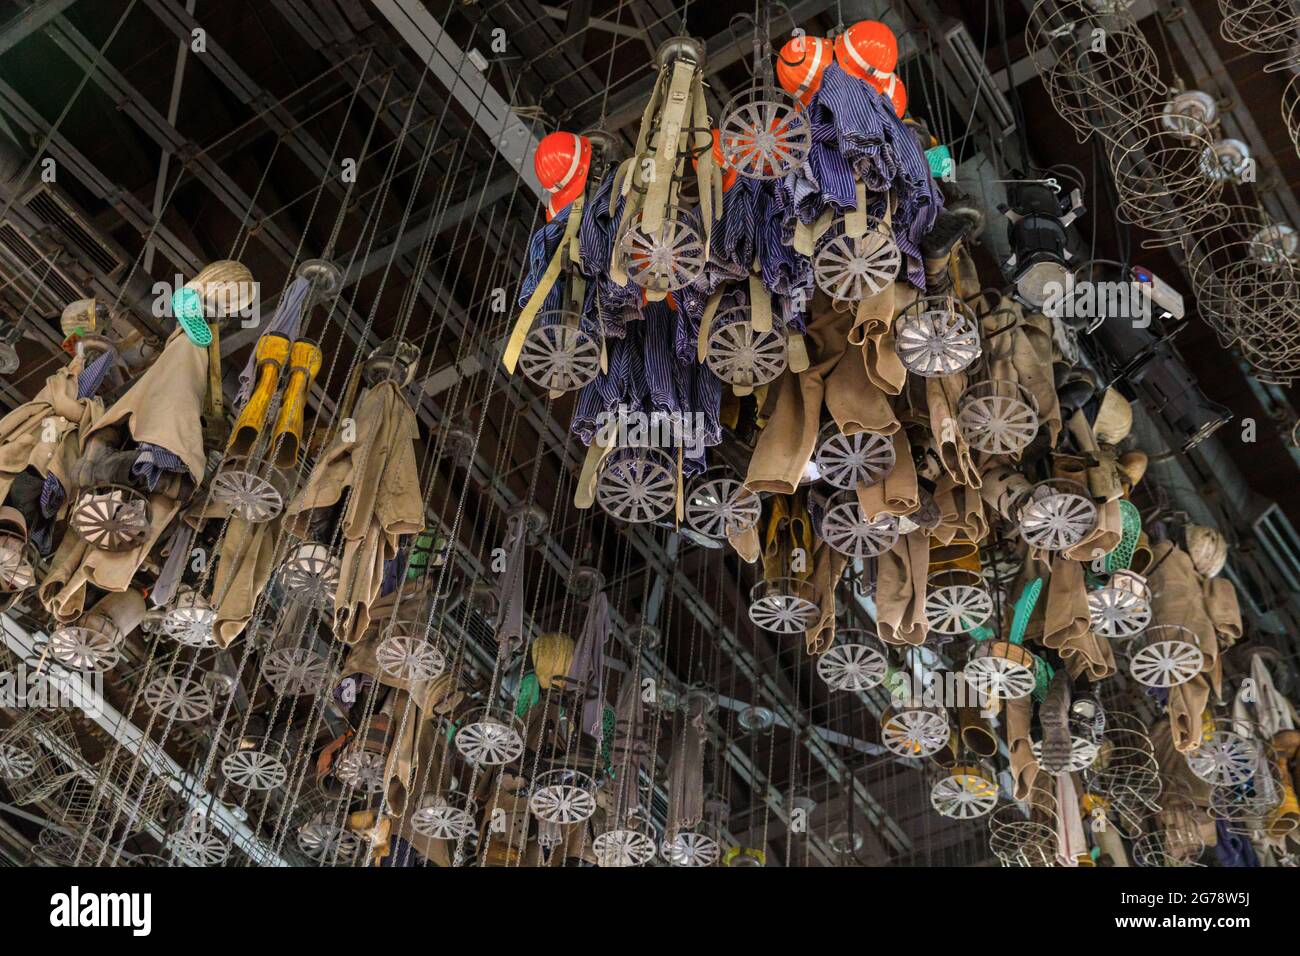 Casier des mineurs de charbon, vestiaire avec paniers pour ranger vêtements de travail et effets personnels, Zeche Zollern Colliery, district de Ruhr, Allemagne Banque D'Images